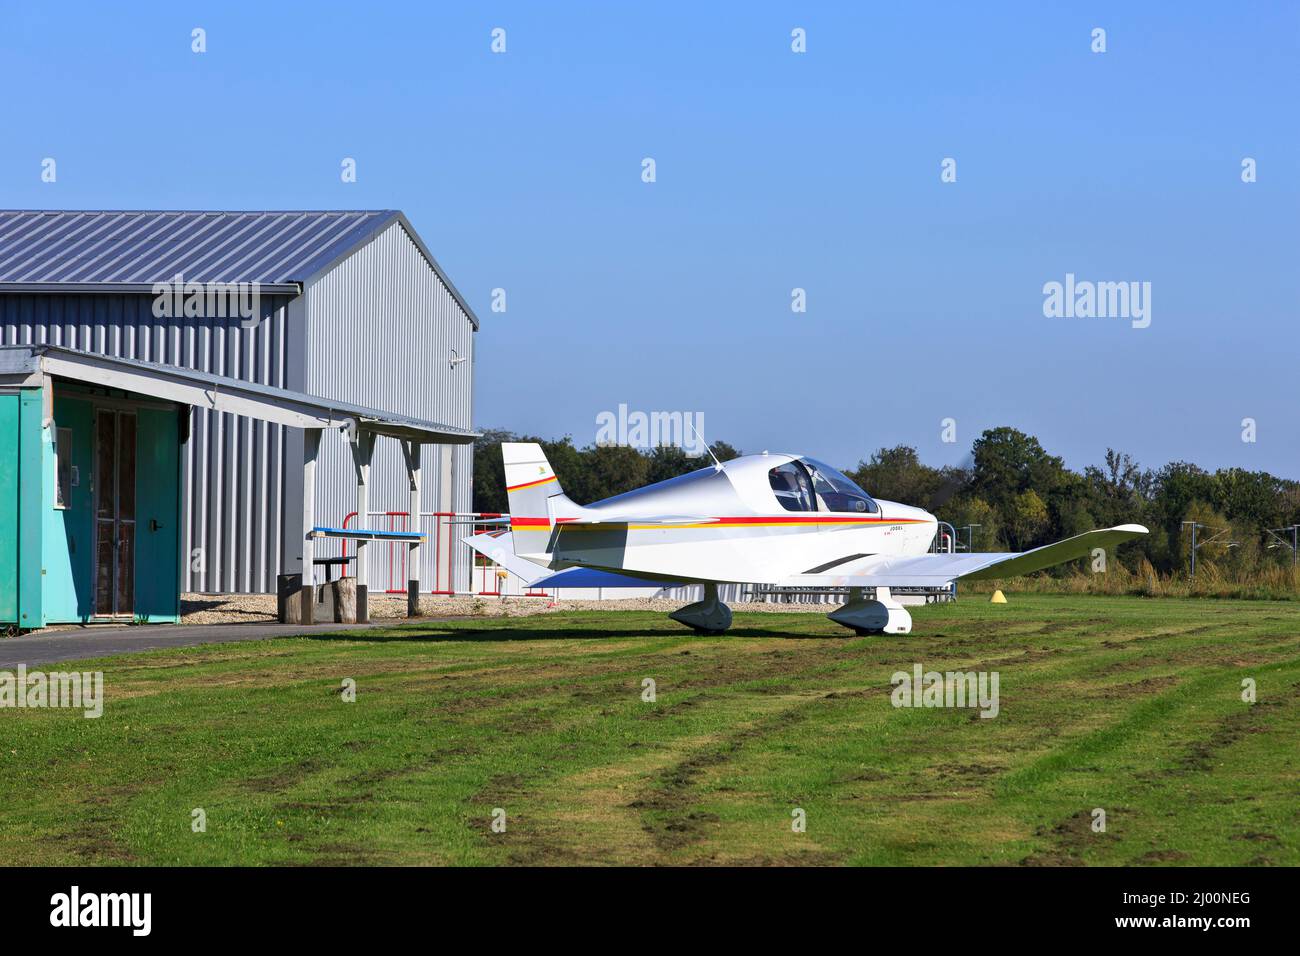 Petit avion de transport en taxi et se préparer au décollage à l'aérodrome de Château Thierry - Belleau (Aisne), France Banque D'Images